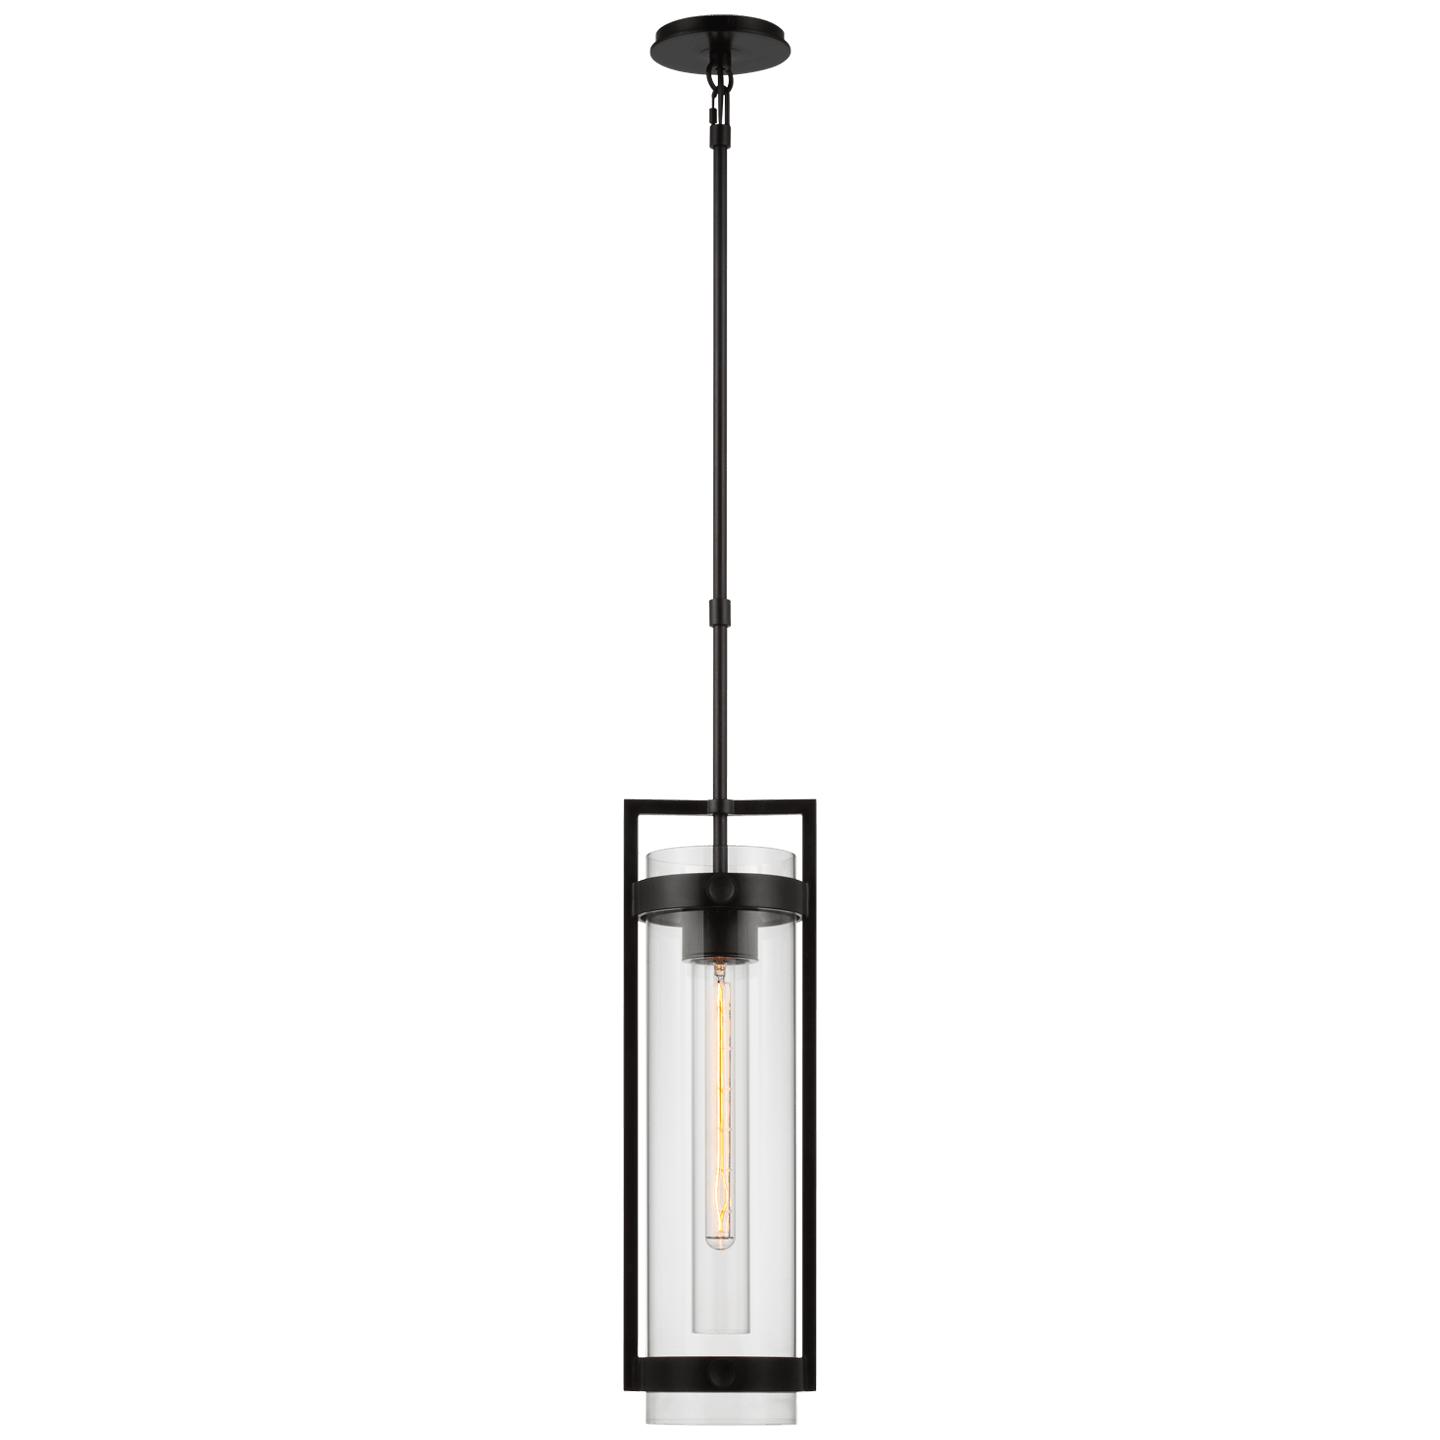 Купить Подвесной светильник Kears Medium Hanging Lantern в интернет-магазине roooms.ru